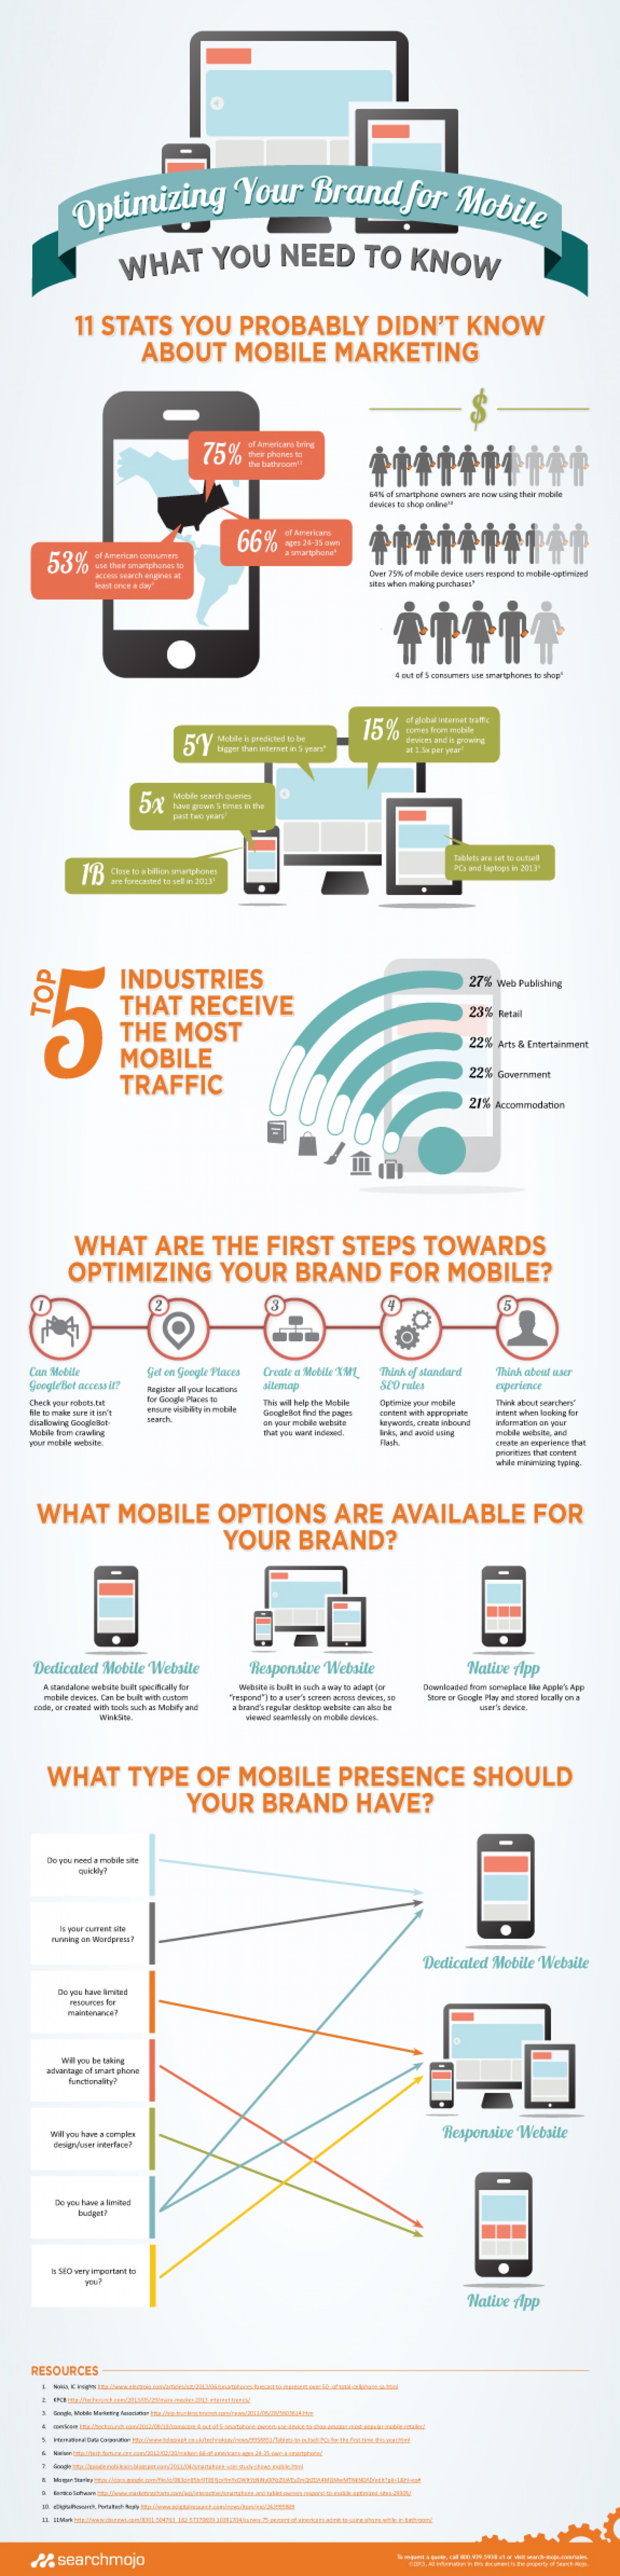 18. Mobile Marketing Optimisation